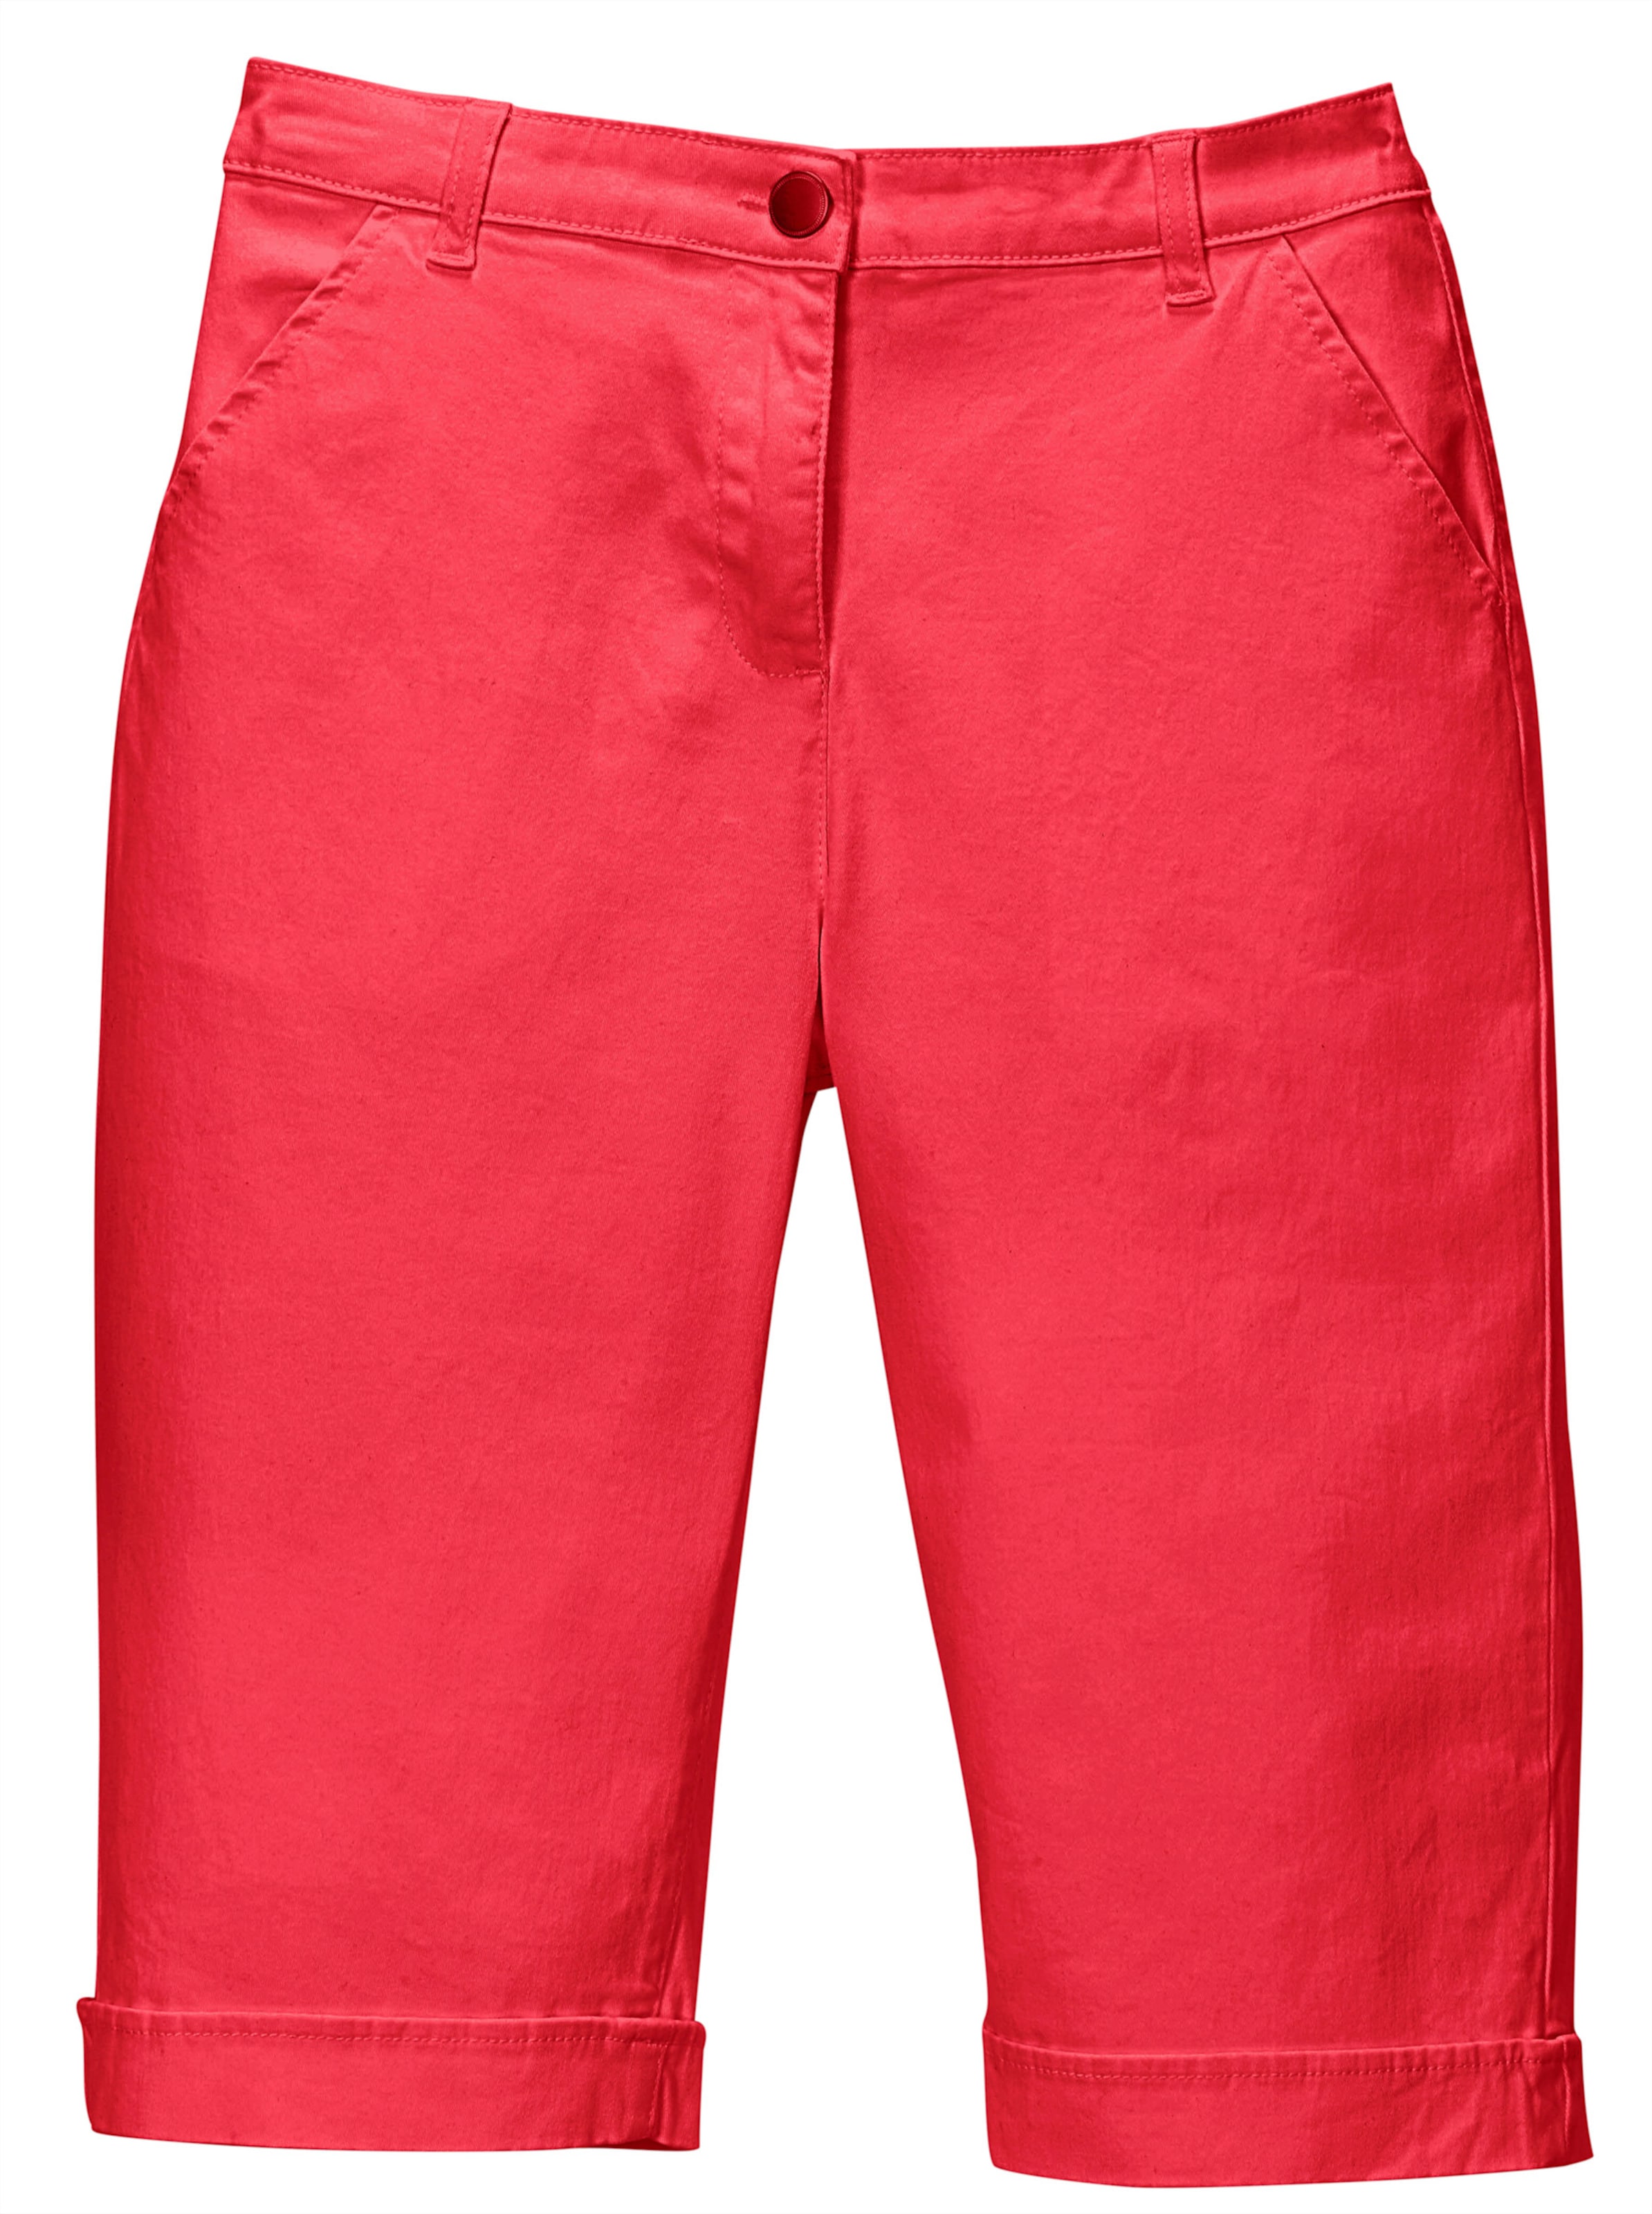 Vorne,1080P günstig Kaufen-Jeansbermudas in rot von heine. Jeansbermudas in rot von heine <![CDATA[Lässige Jeans-Bermudas in aktuellen Sommerfarben. Mit rückwärtigem Dehnbund, Gürtelschlaufen sowie Knopf und Reißverschluss. 2 Taschen vorne, 2 imitierte Gesäßtaschen. Am Saum 